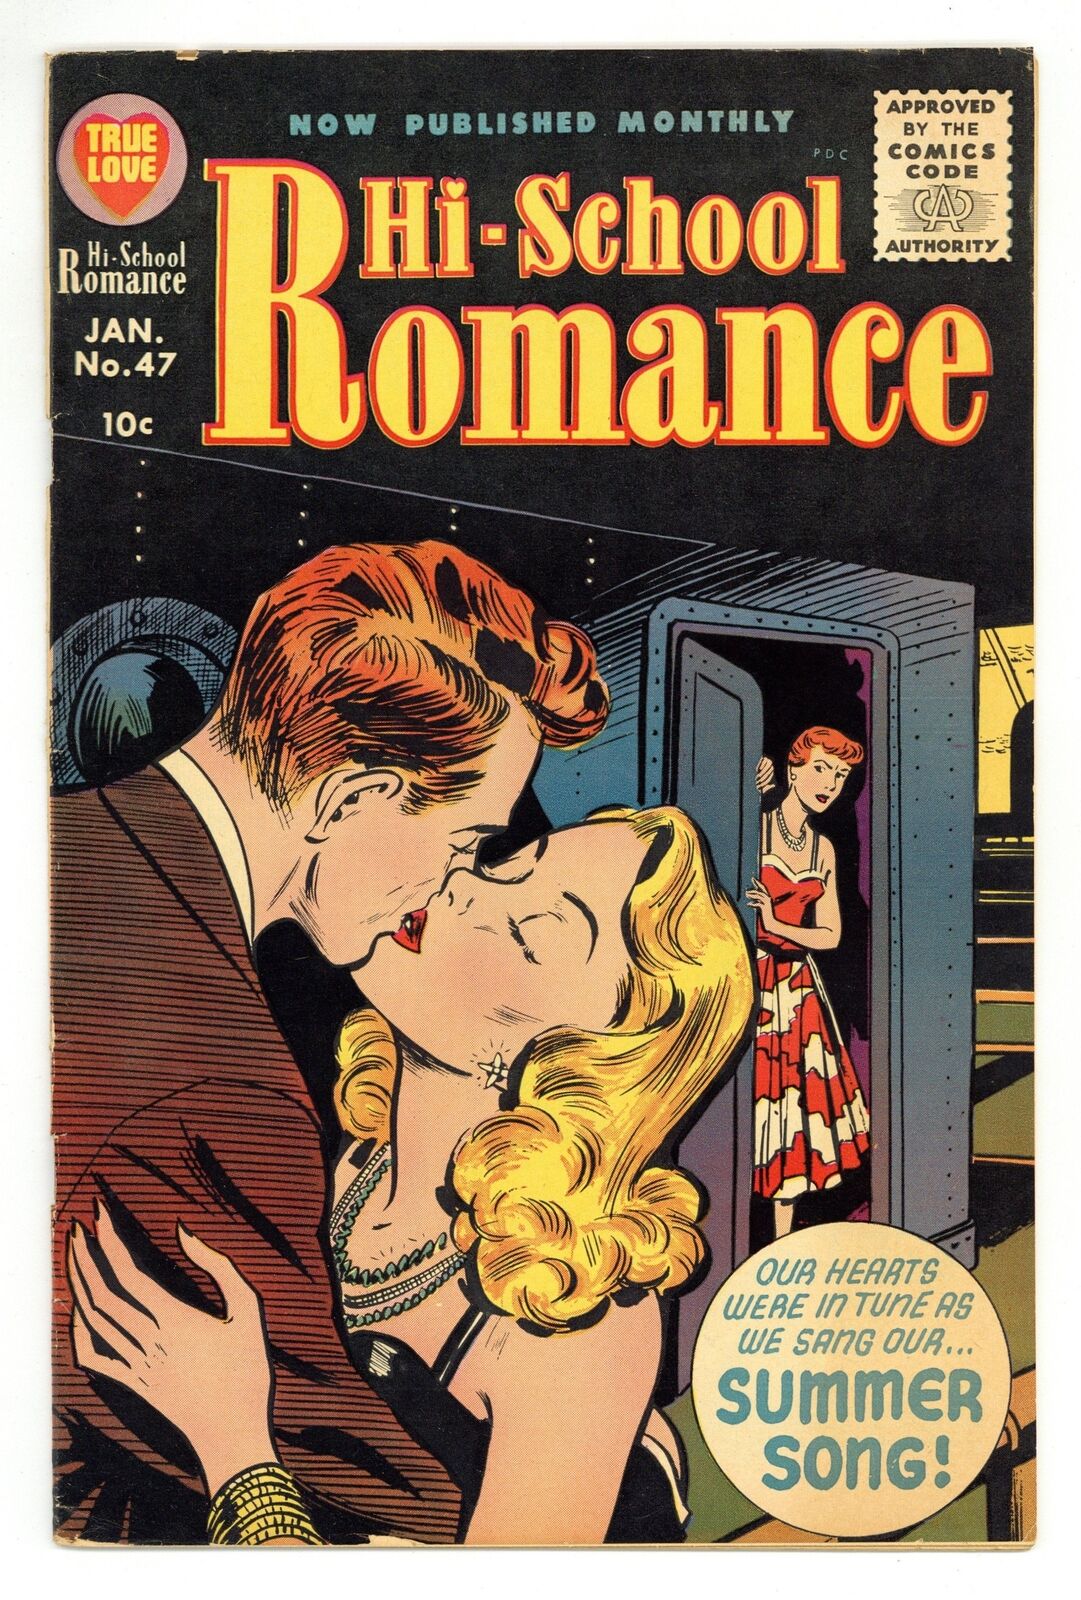 Hi-School Romance #47 VG- 3.5 1956